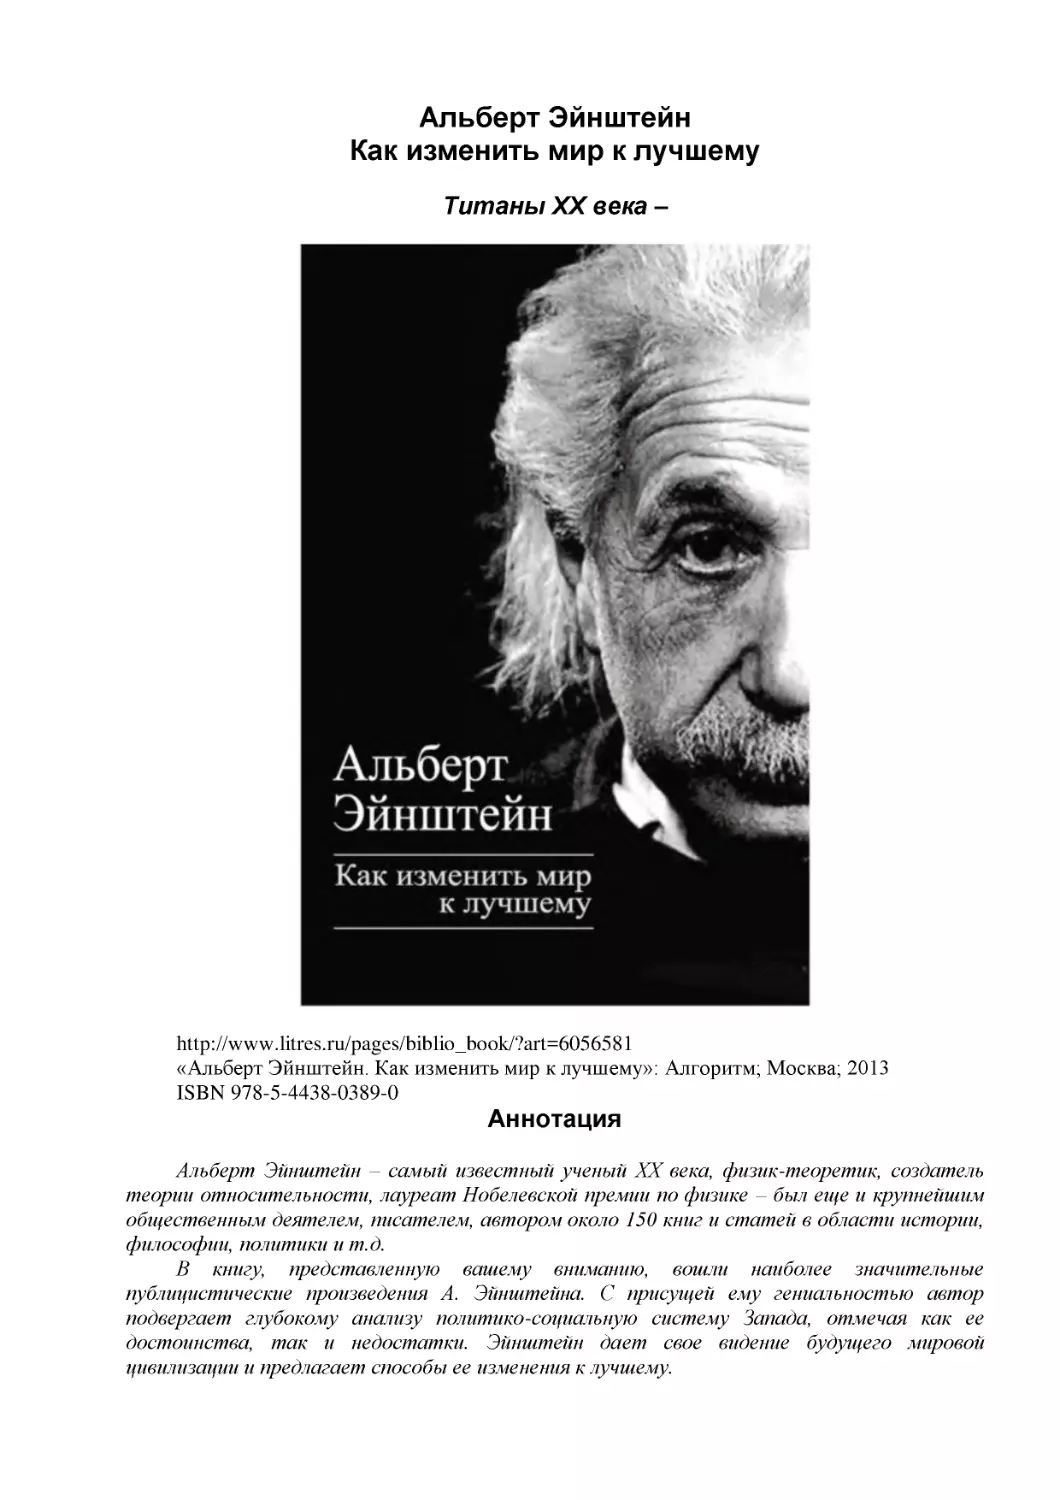 Альберт Эйнштейн
Как изменить мир к лучшему
Титаны XX века –
Аннотация